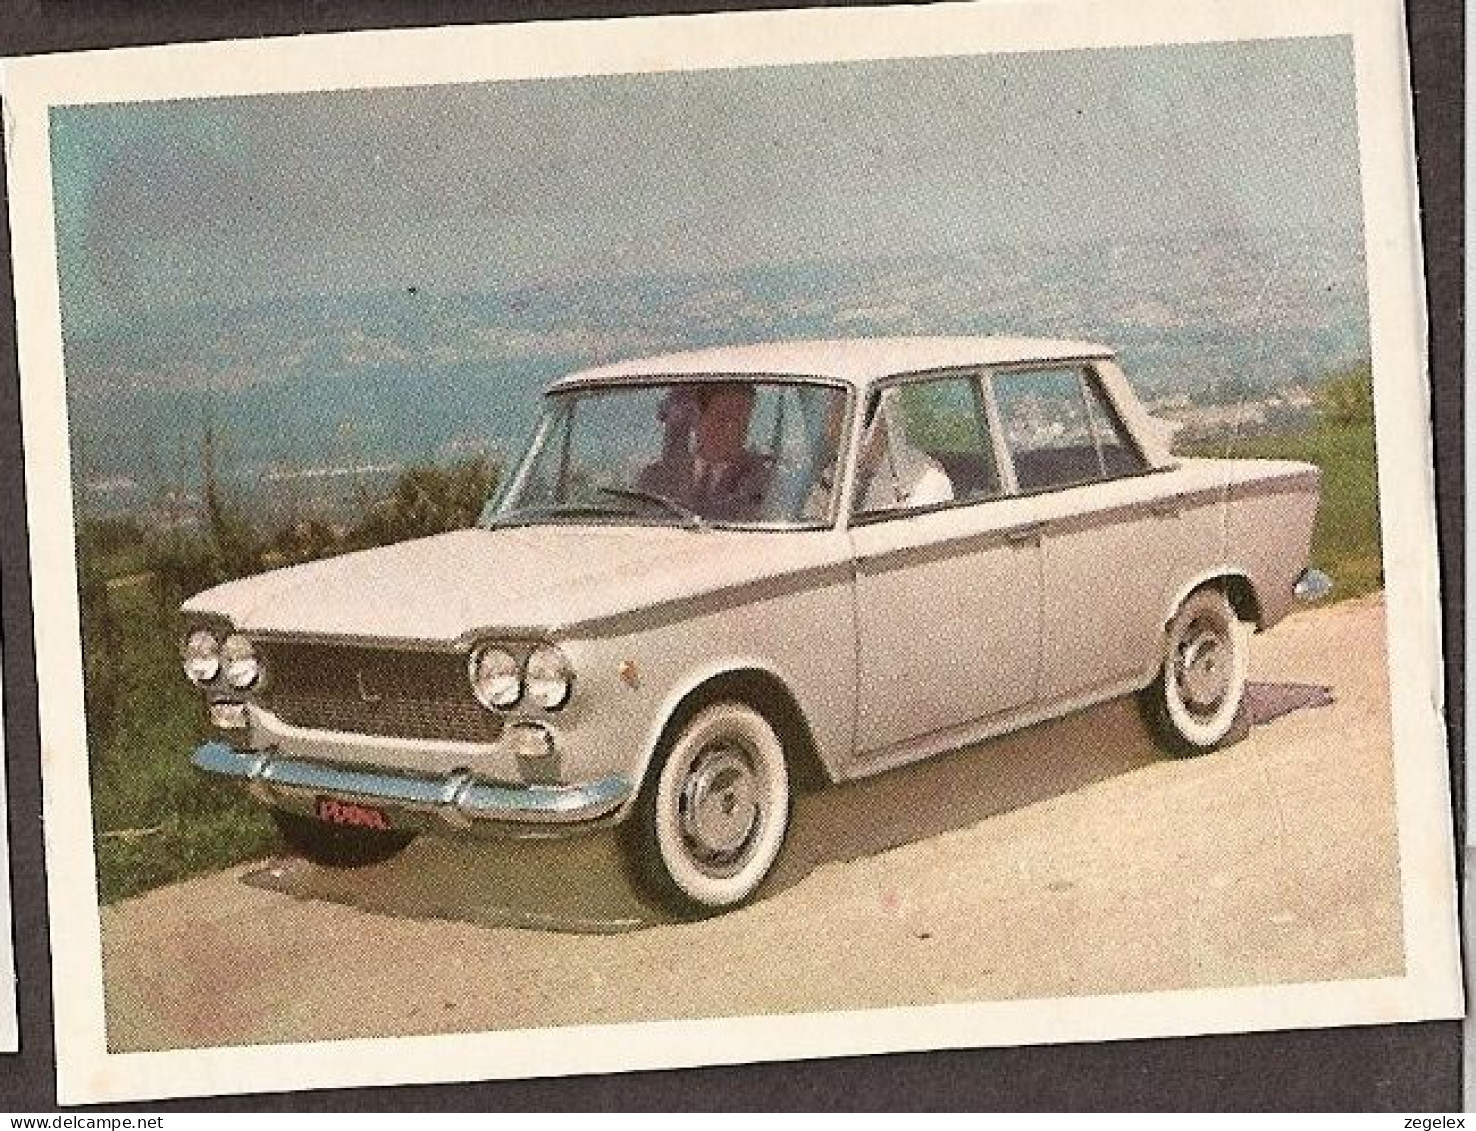 Fiat 1300 - Automobile, Voiture, Oldtimer, Car. Voir Description, See  The Description. - Cars